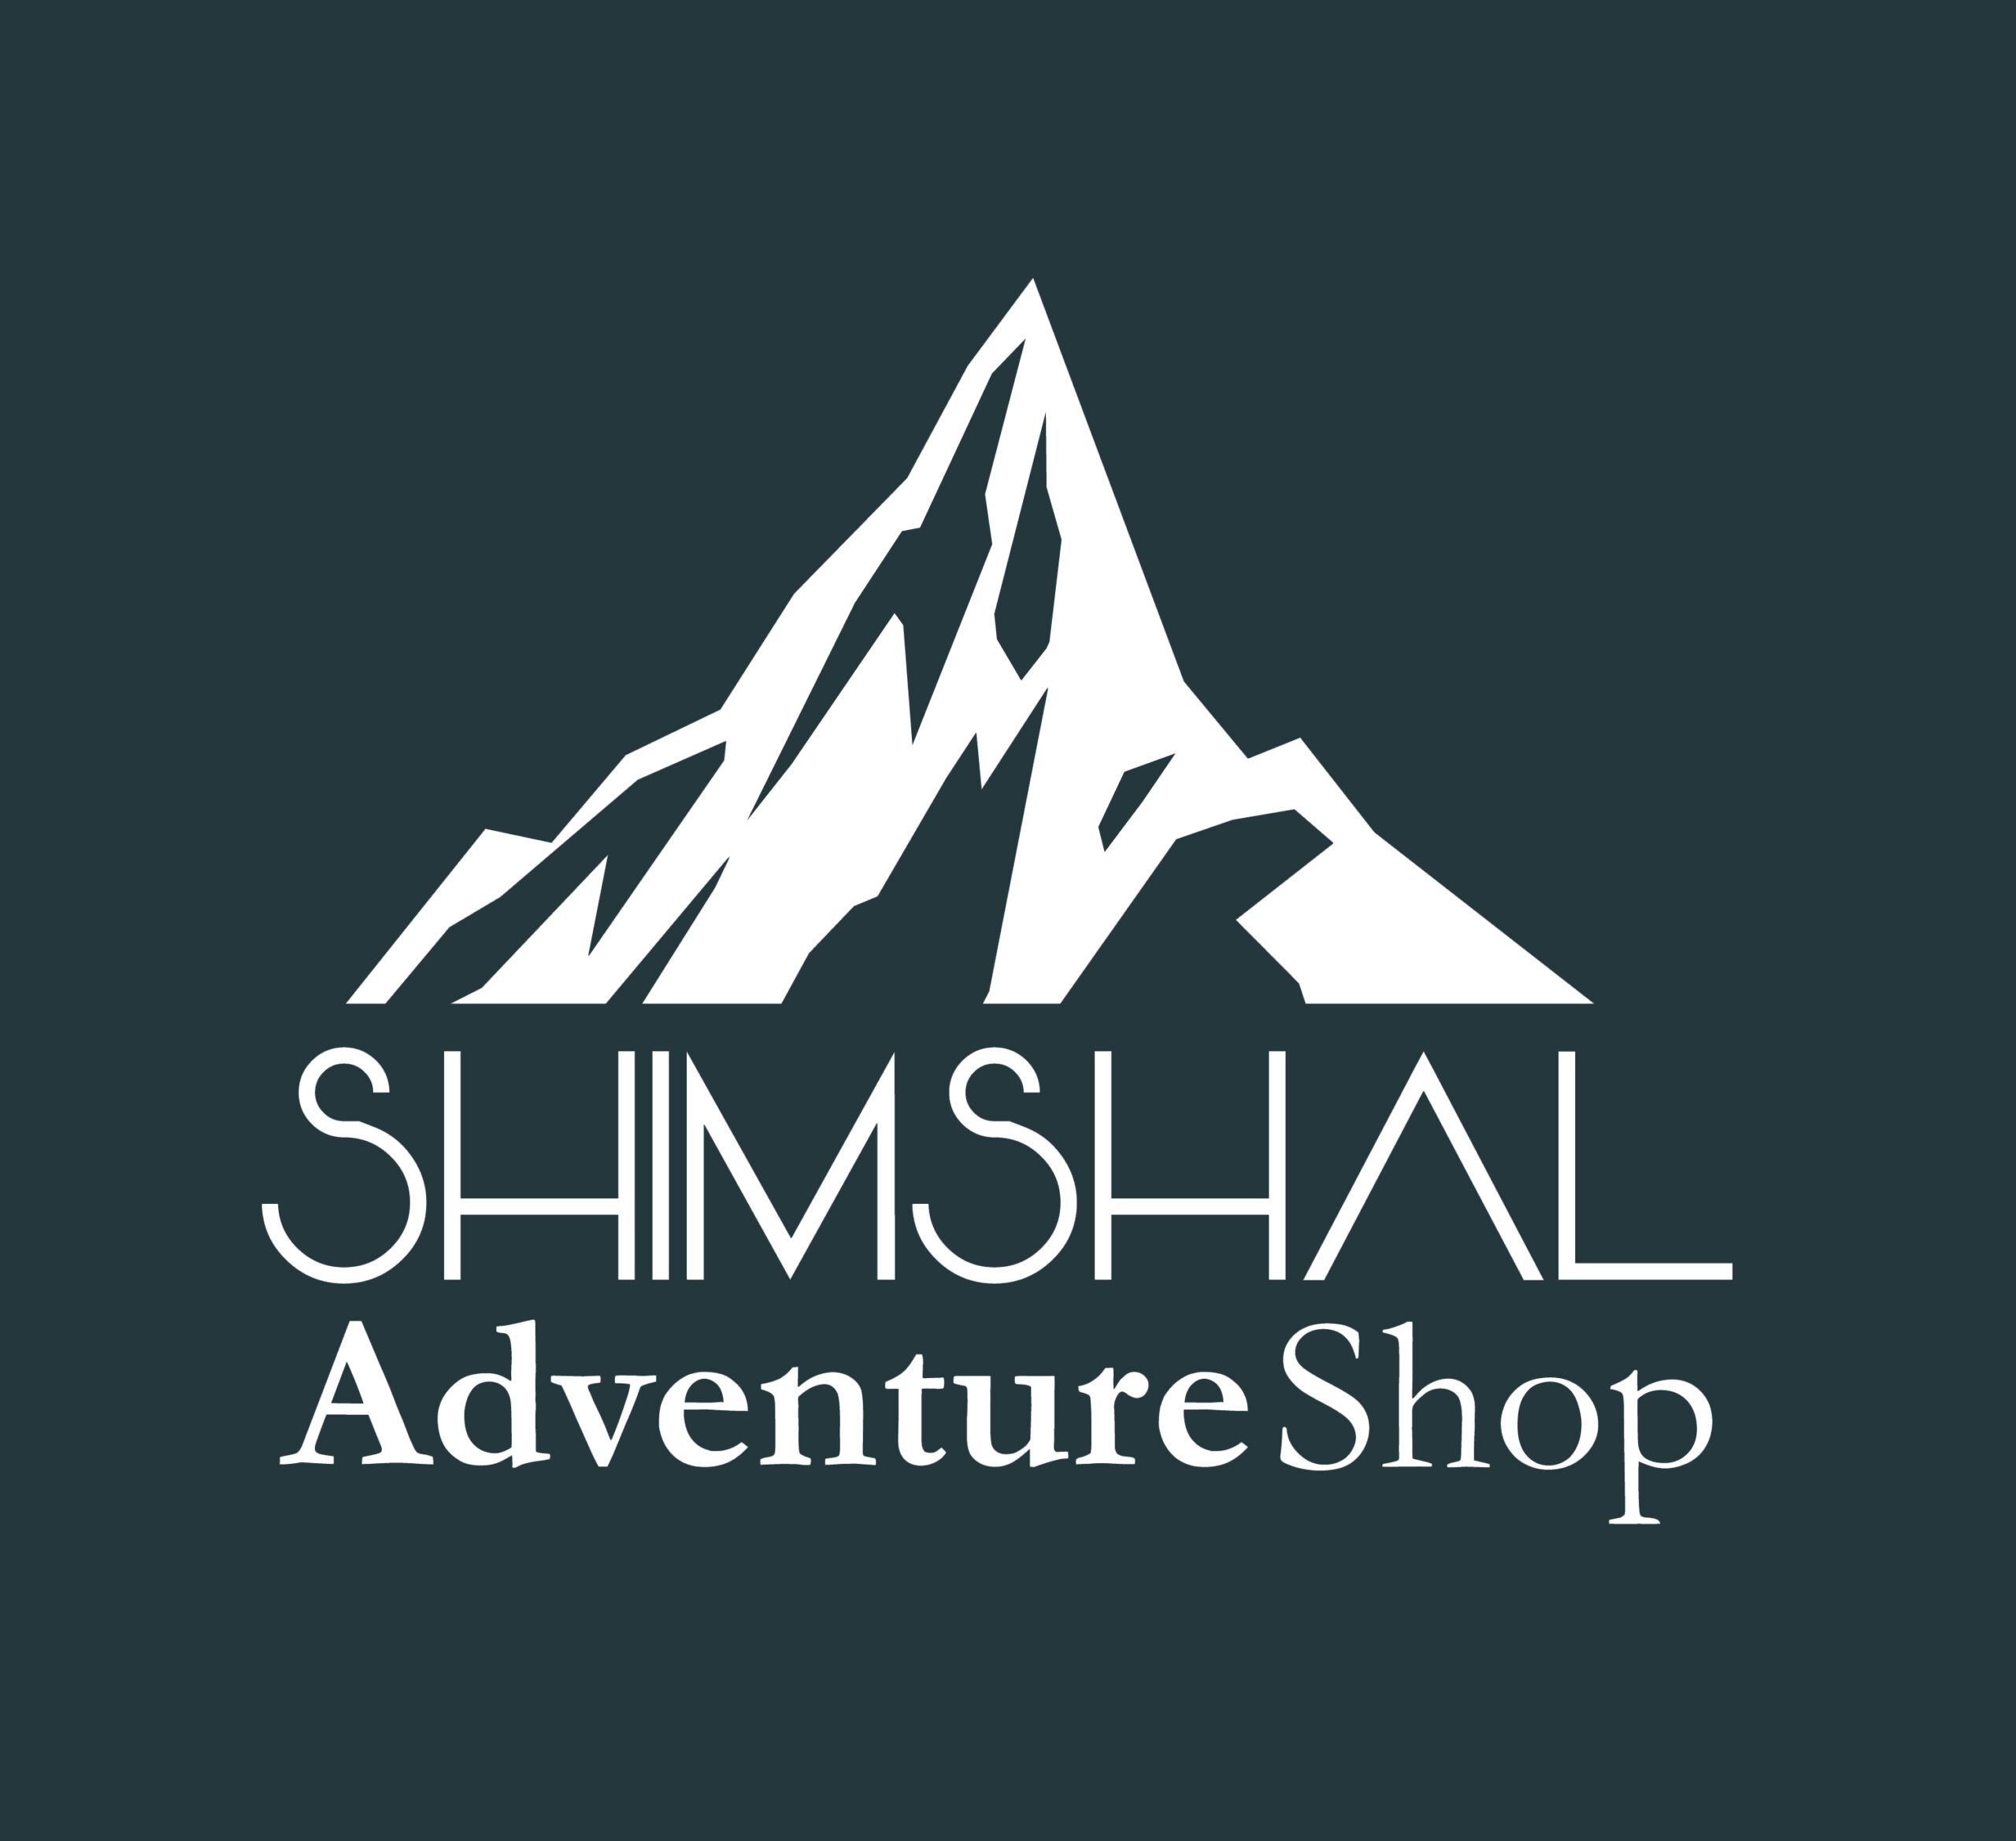 Shimshal Adventure Shop | Outdoor Gear Store in Pakistan